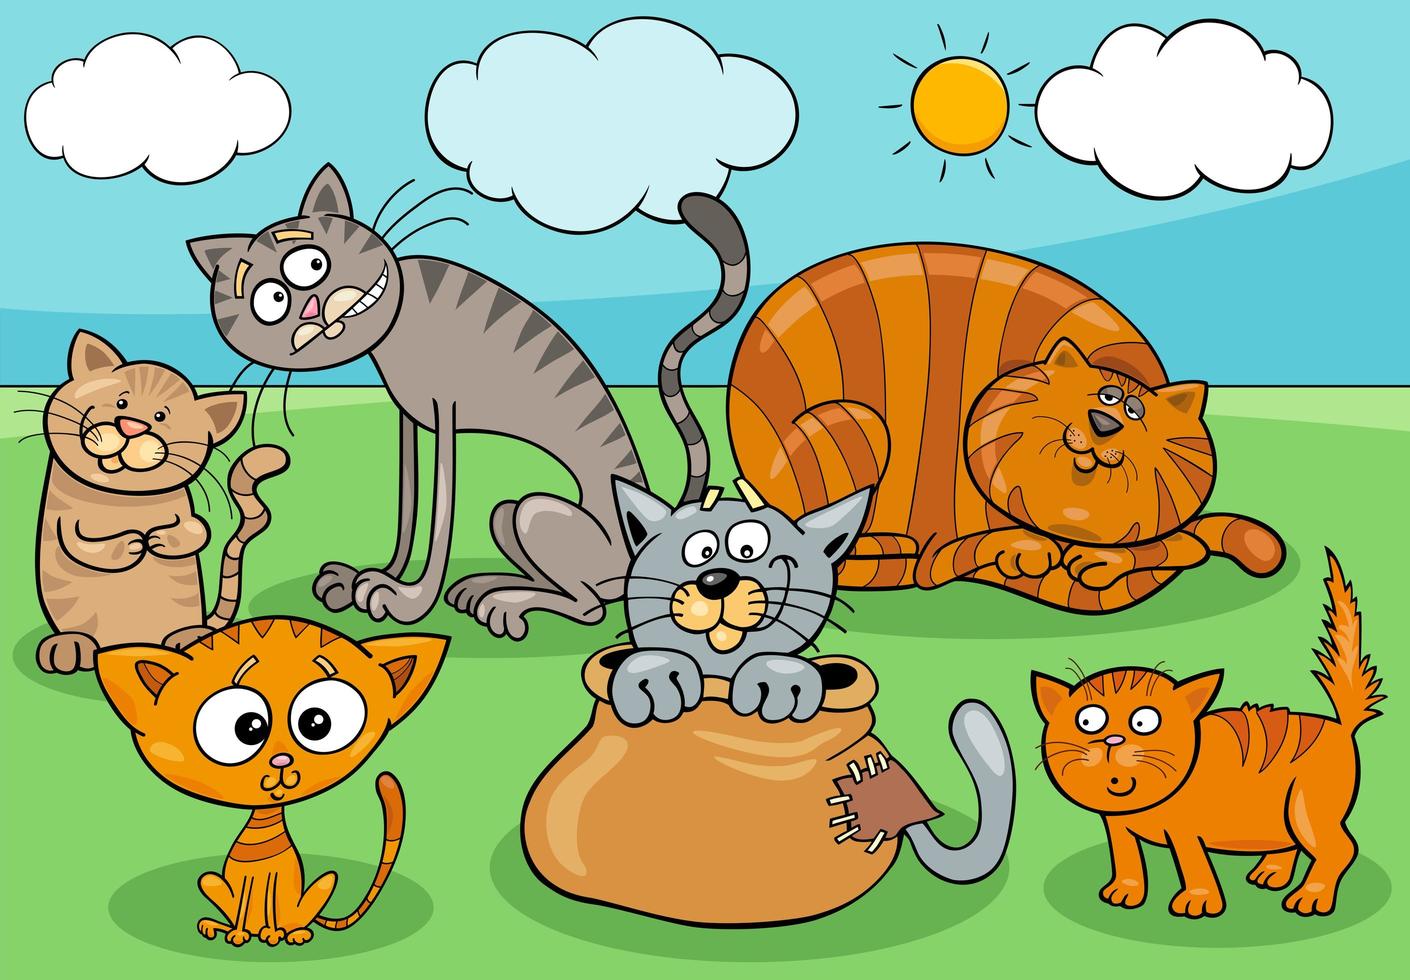 Katzen- und Kätzchengruppenkarikaturillustration vektor